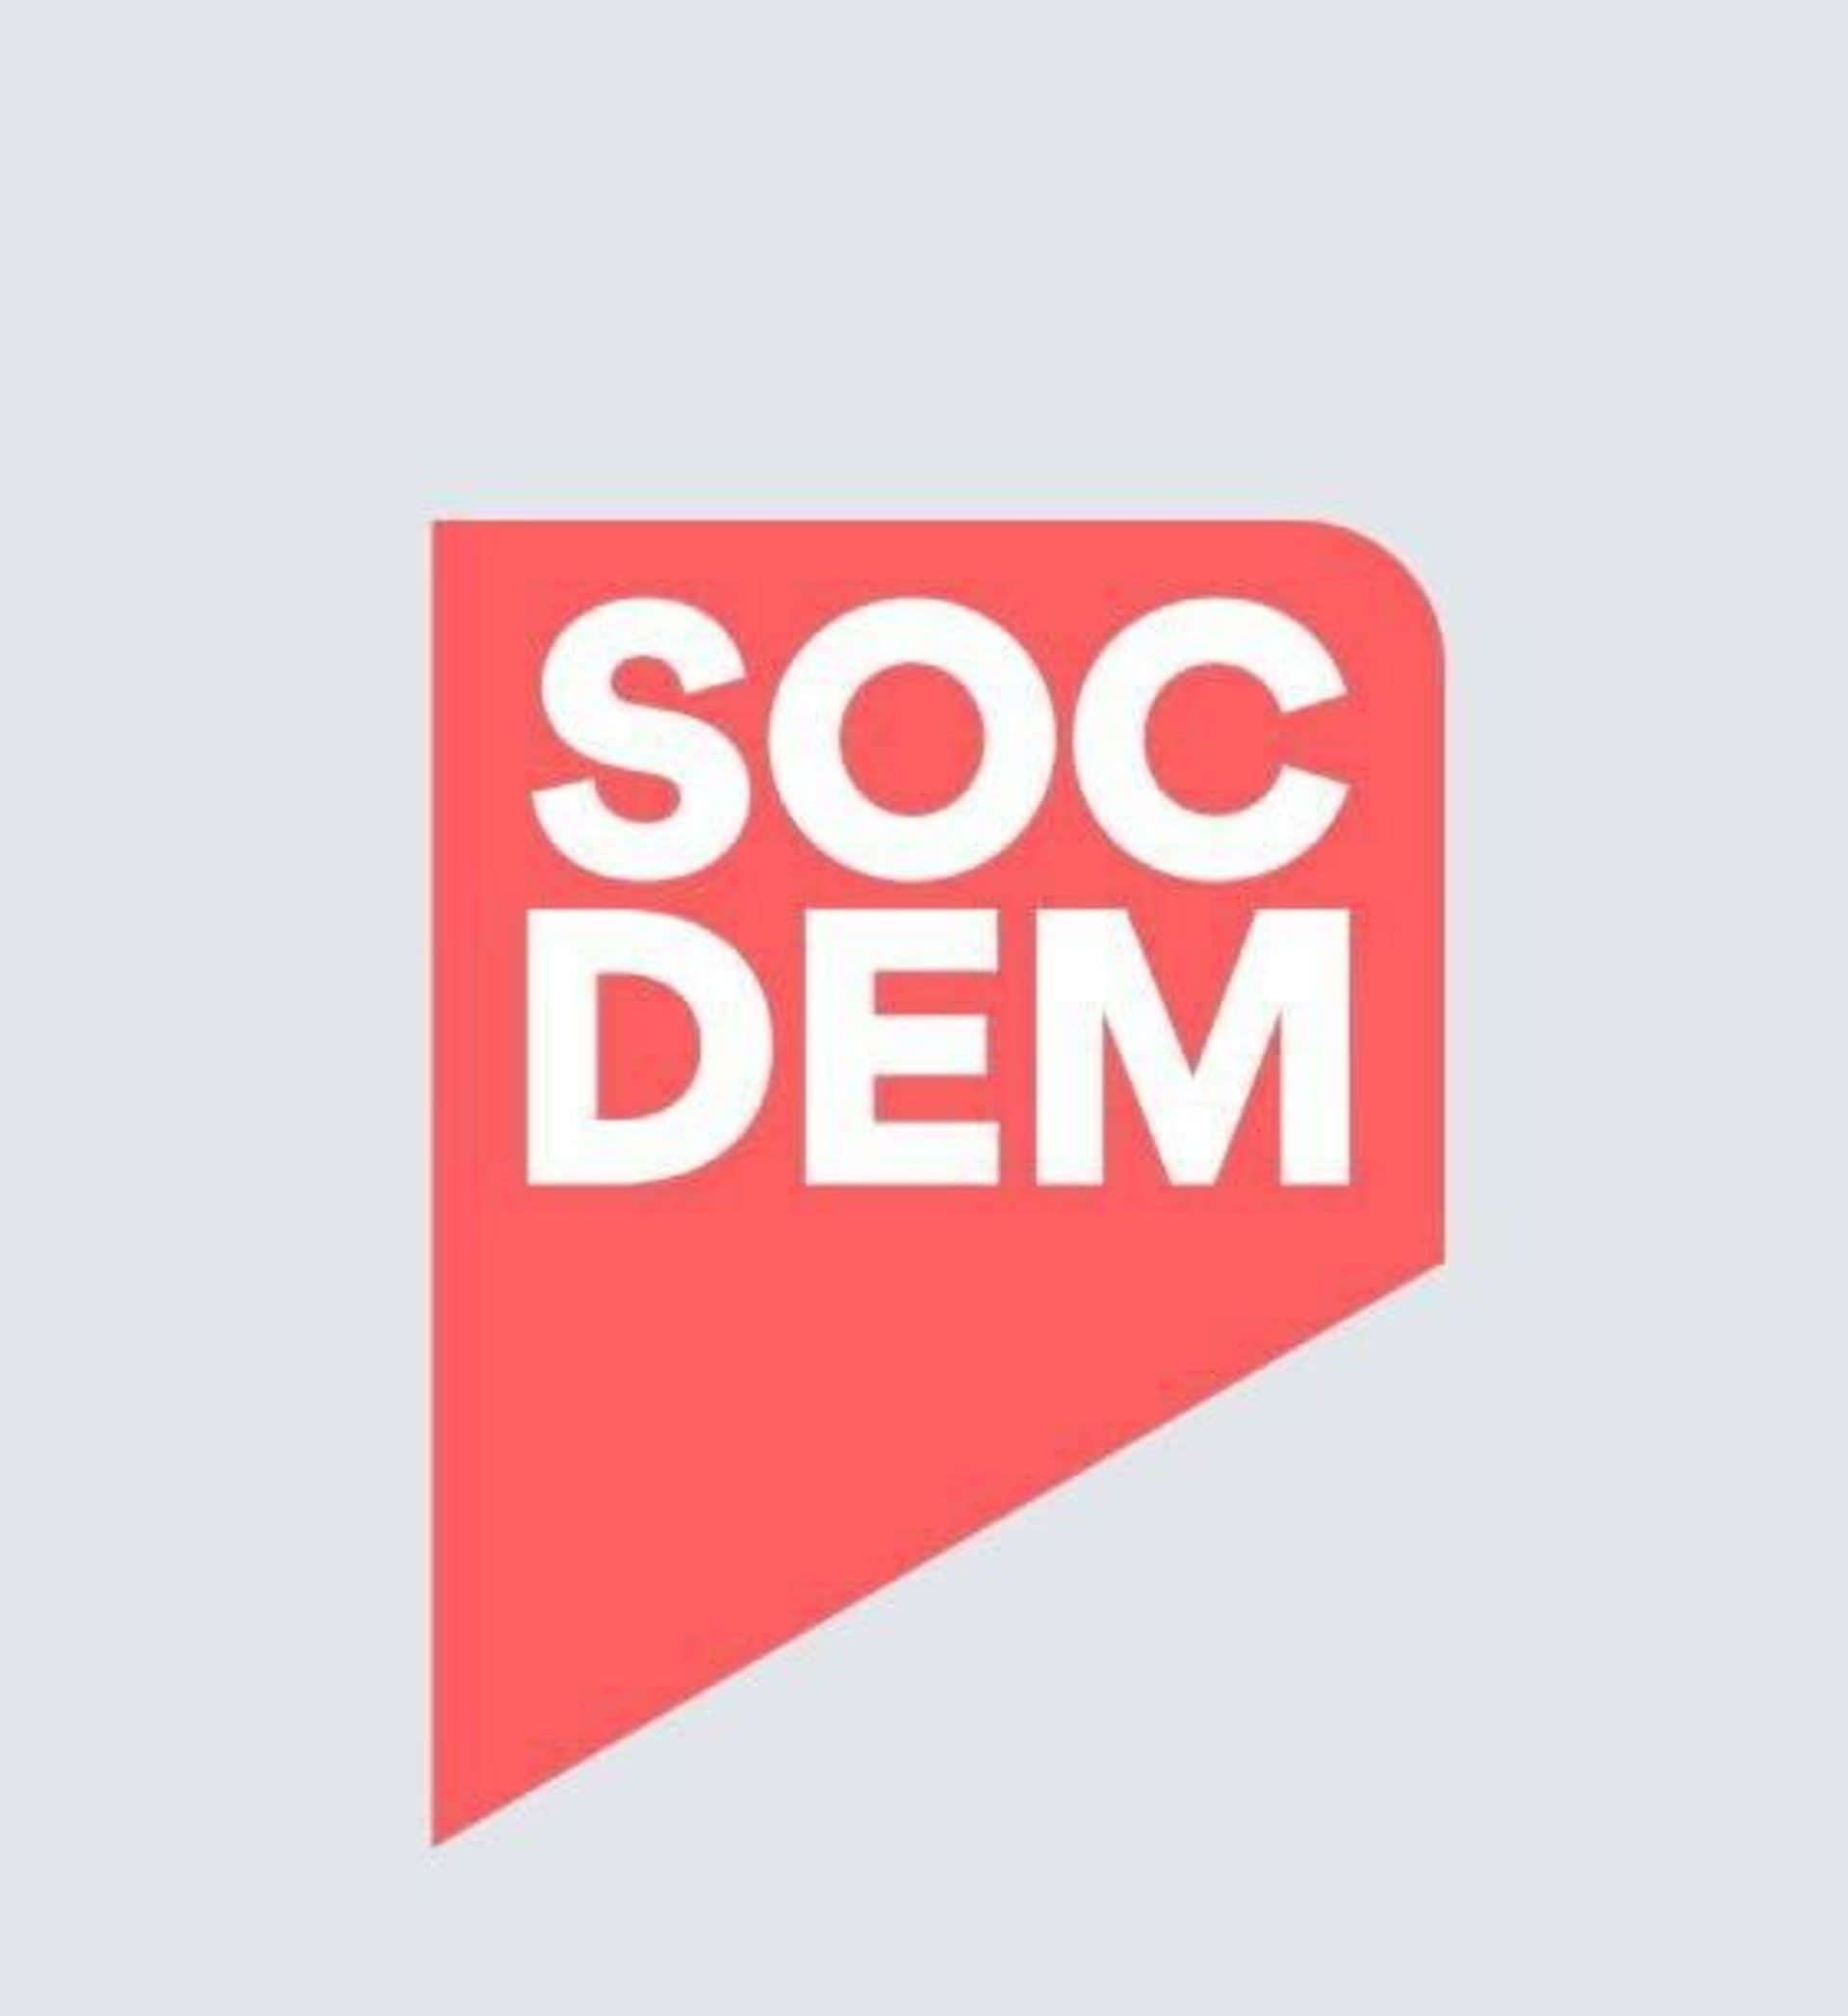 Sociální demokracie představila nové logo.